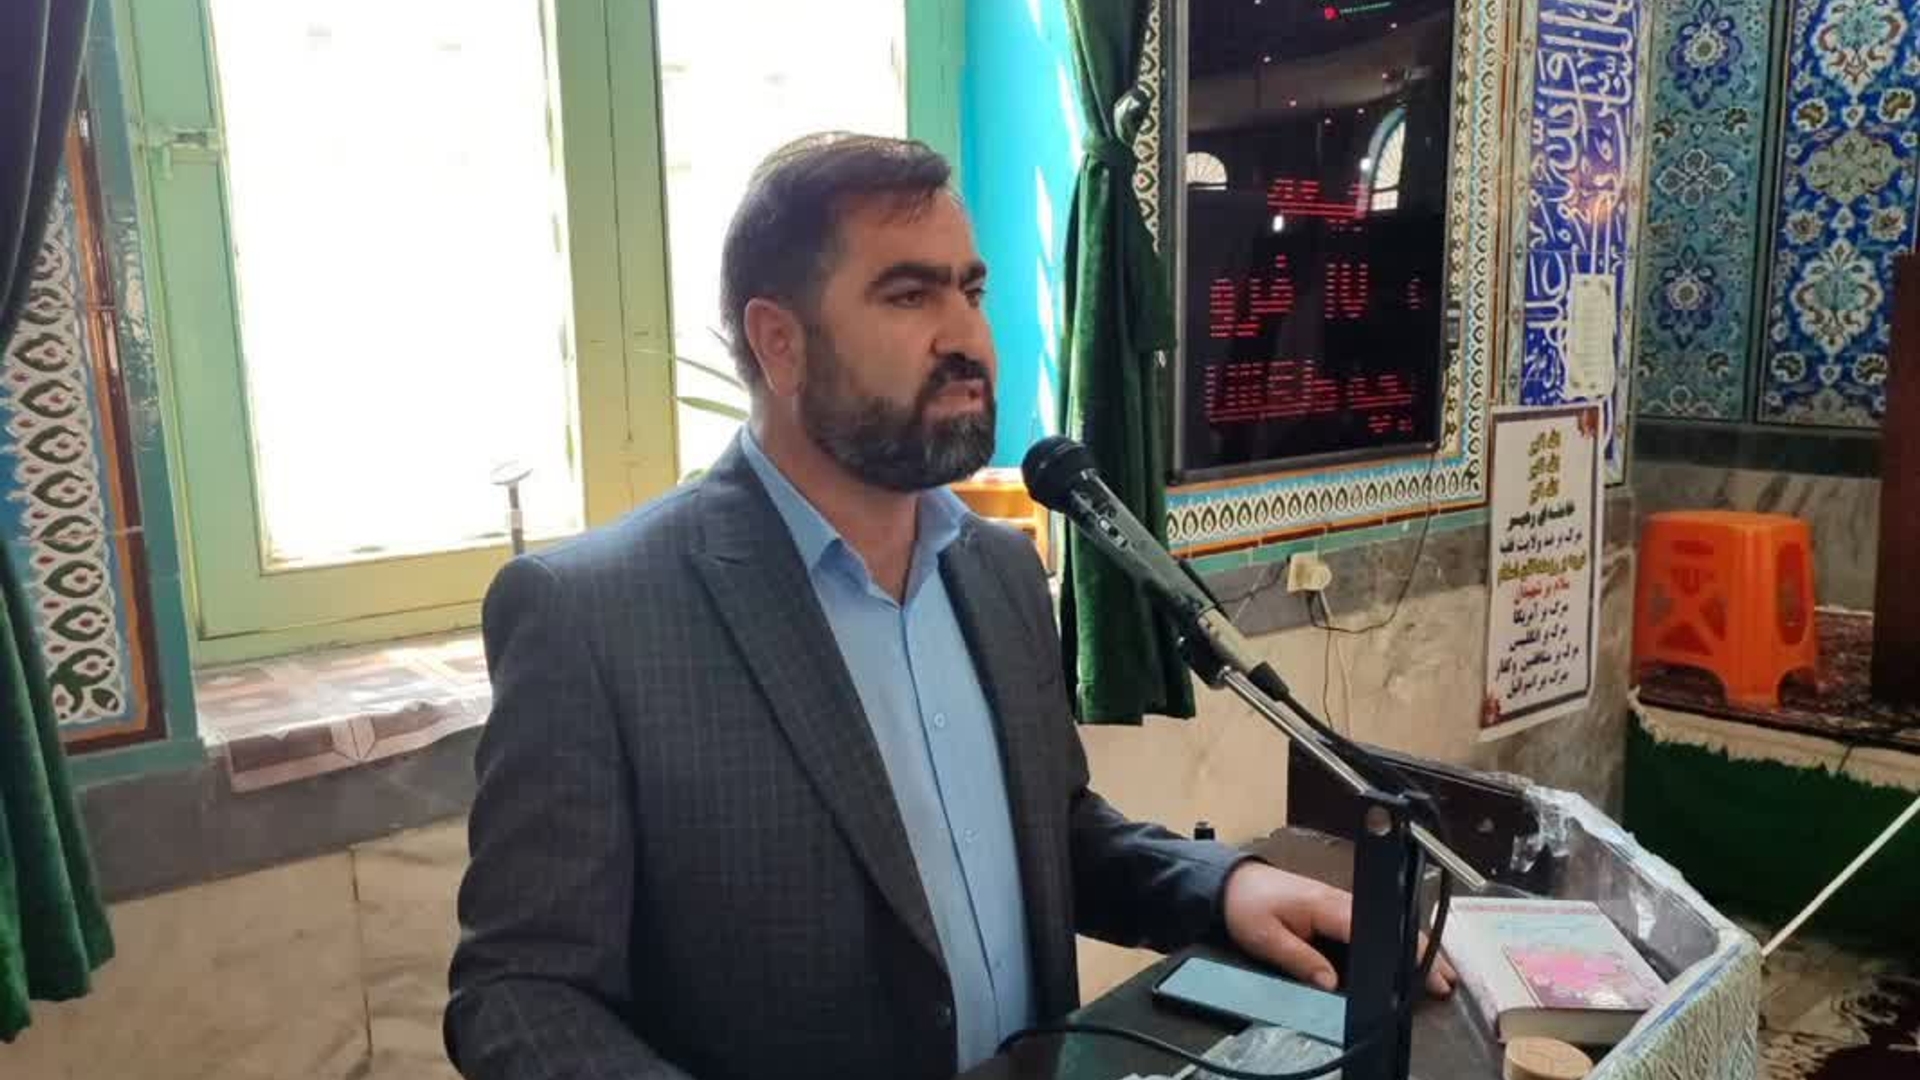 ابوالقاسم آقازیارتی فرماندار شهرستان فراهان در سخنرانی روز قدس بیان داشت